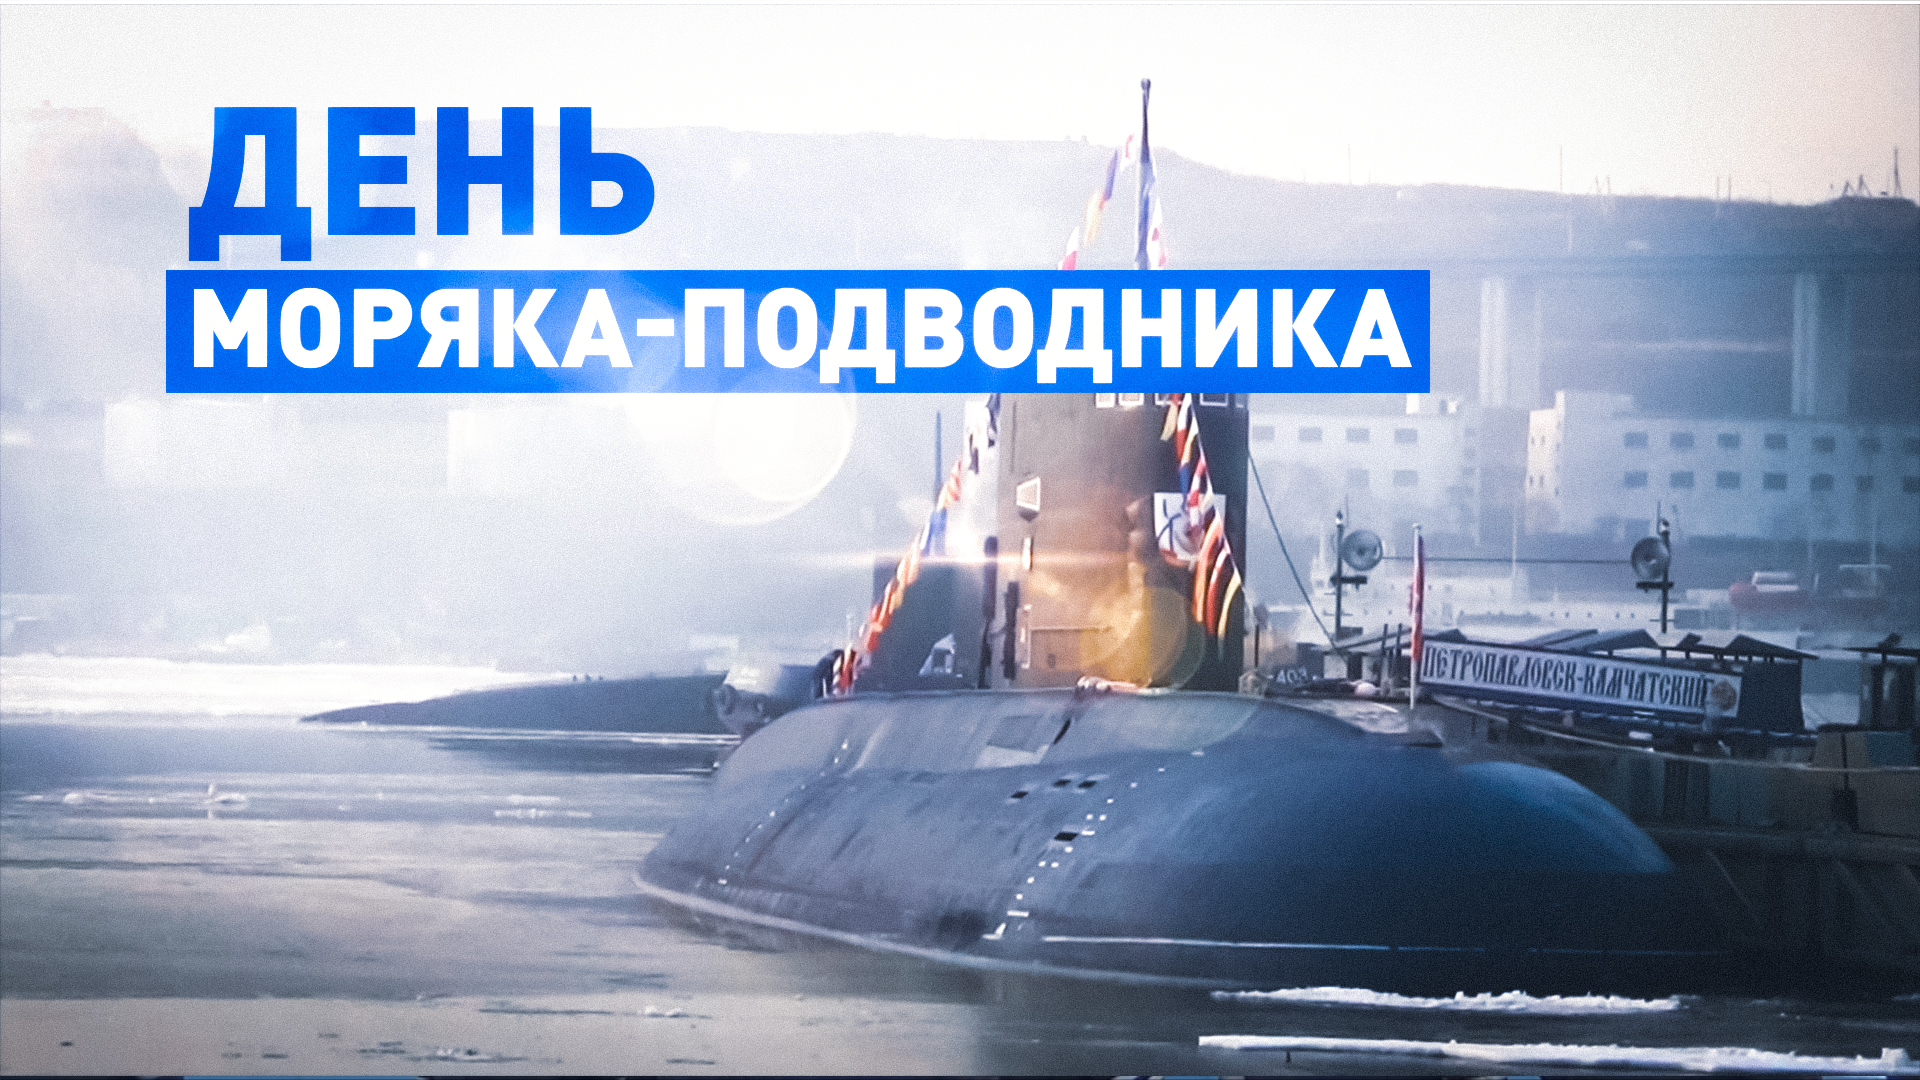 В пунктах базирования во Владивостоке отметили День моряка-подводника